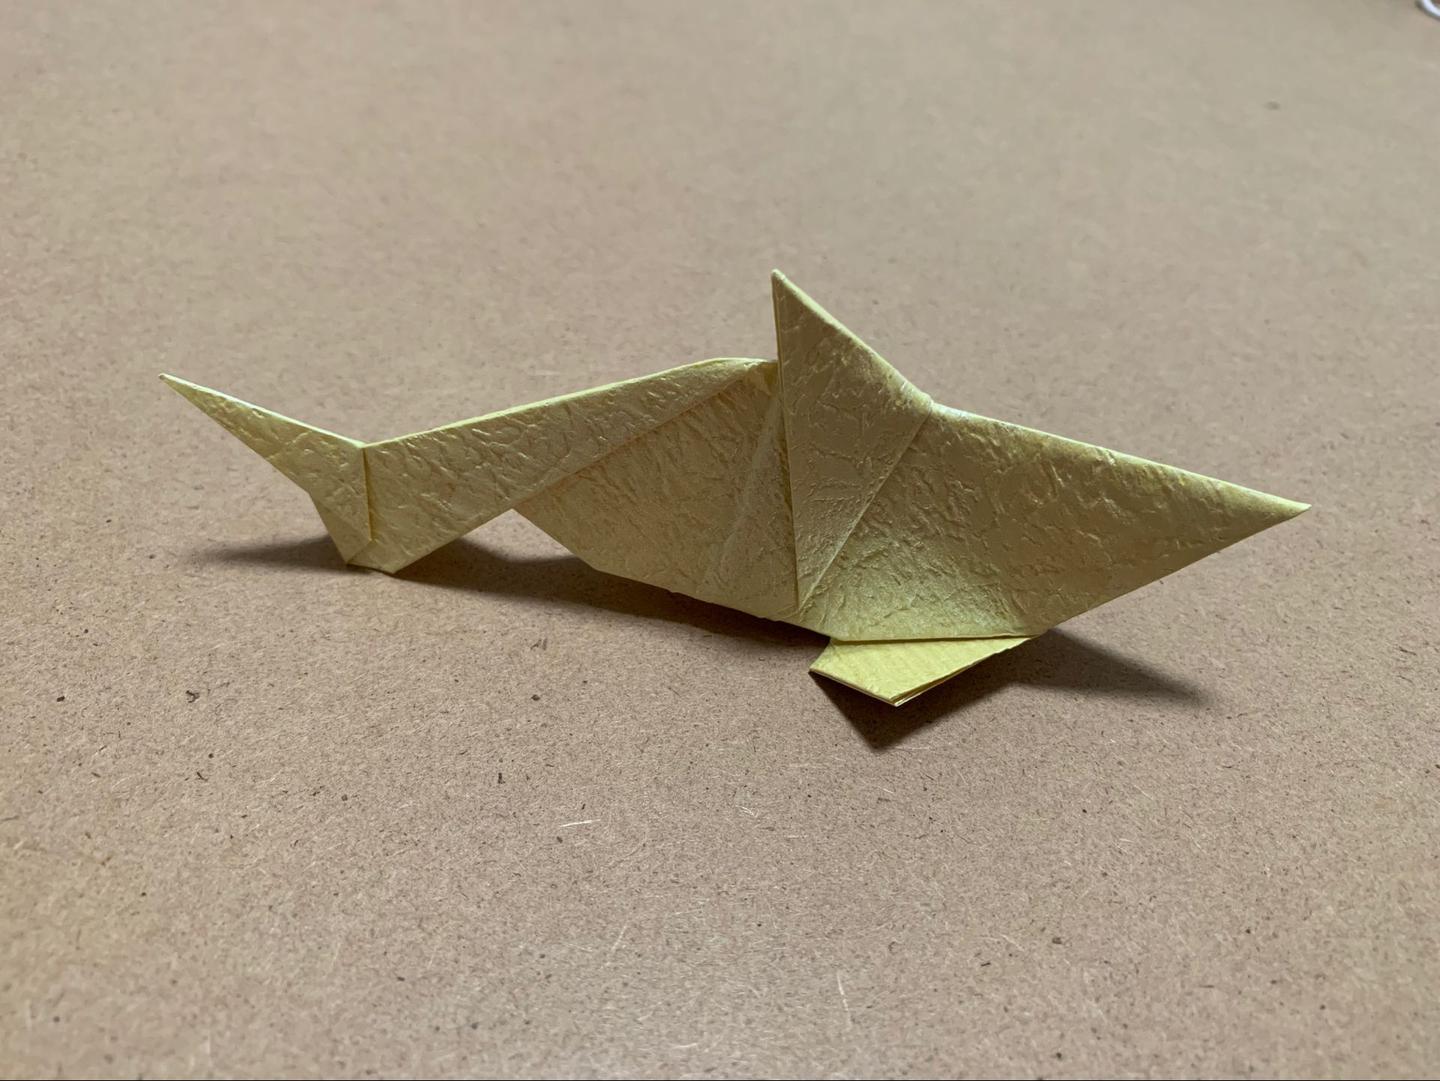 小孩简单又漂亮的DIY折纸方法 小鱼折法图片与步骤图解 咿咿呀呀儿童手工网